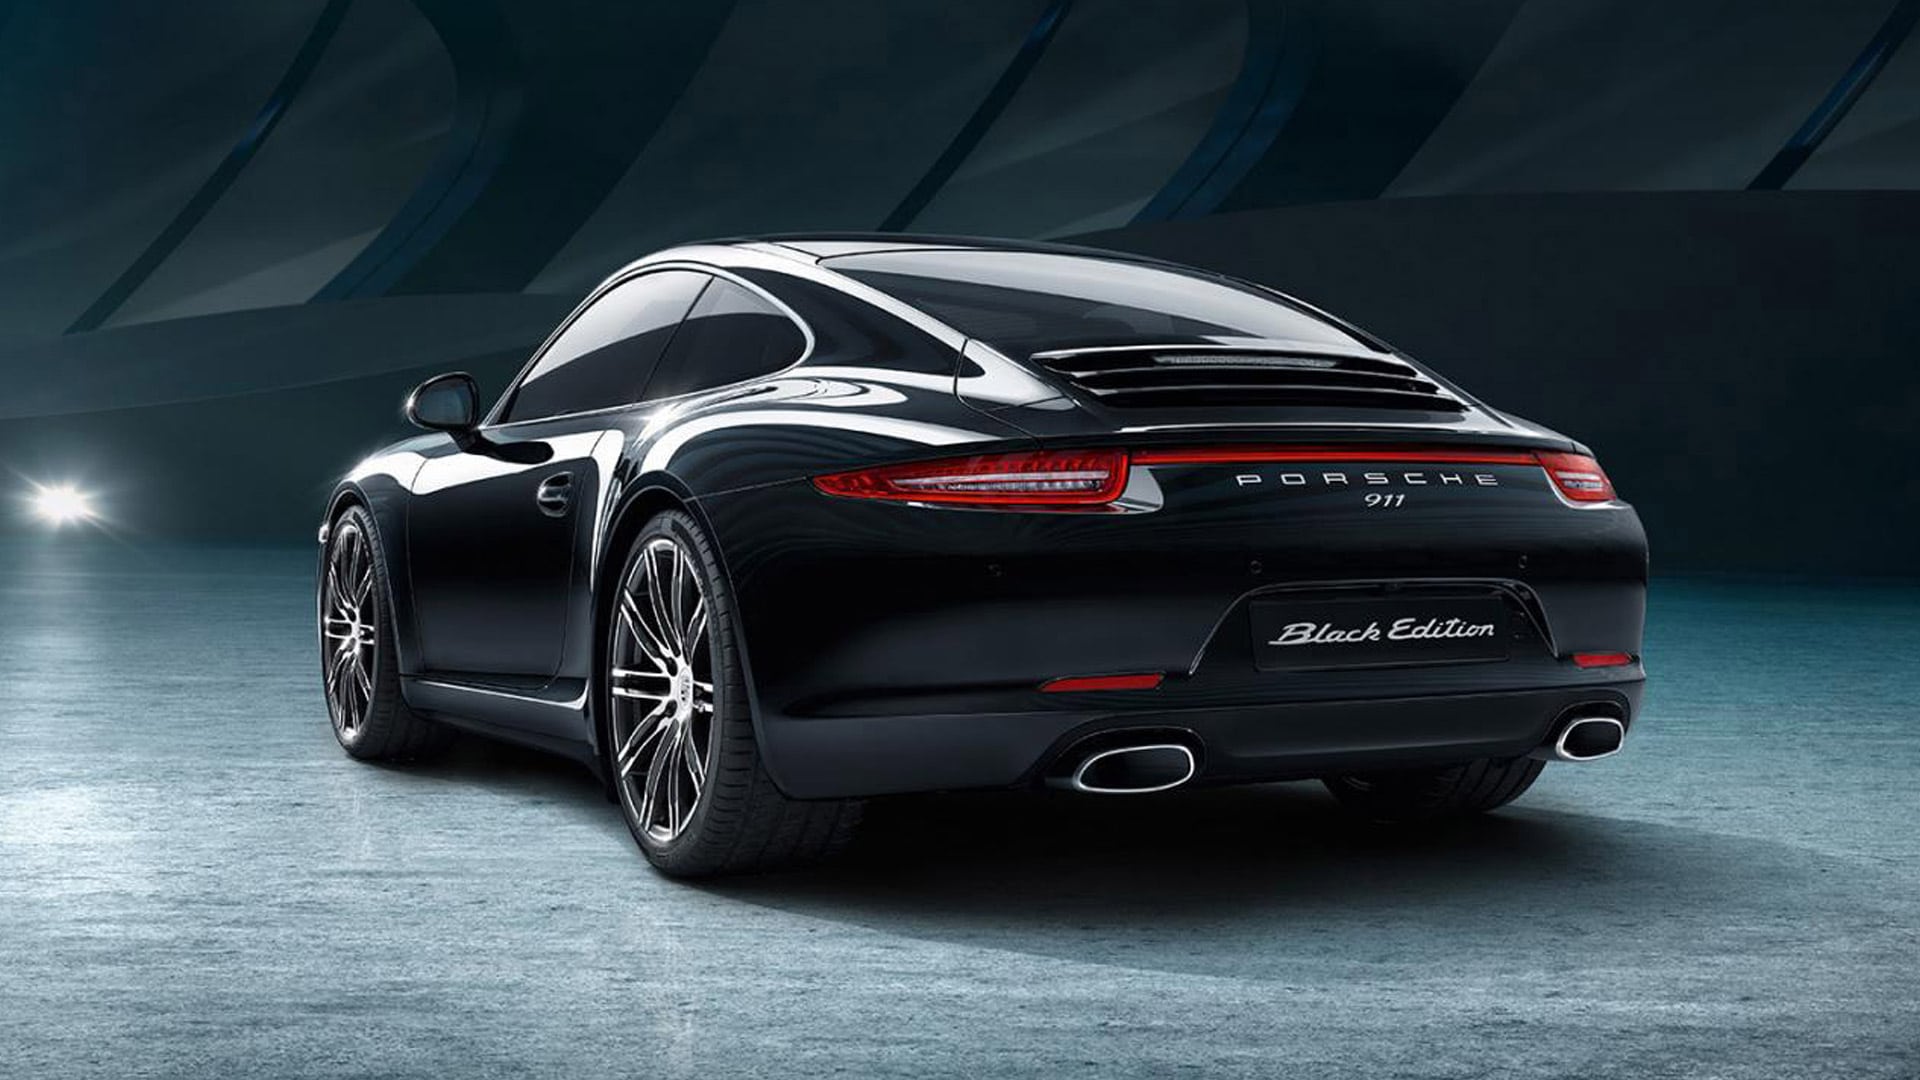 Porsche 911 Carrera Black Edition - Ultimate Luxury Cars Australia